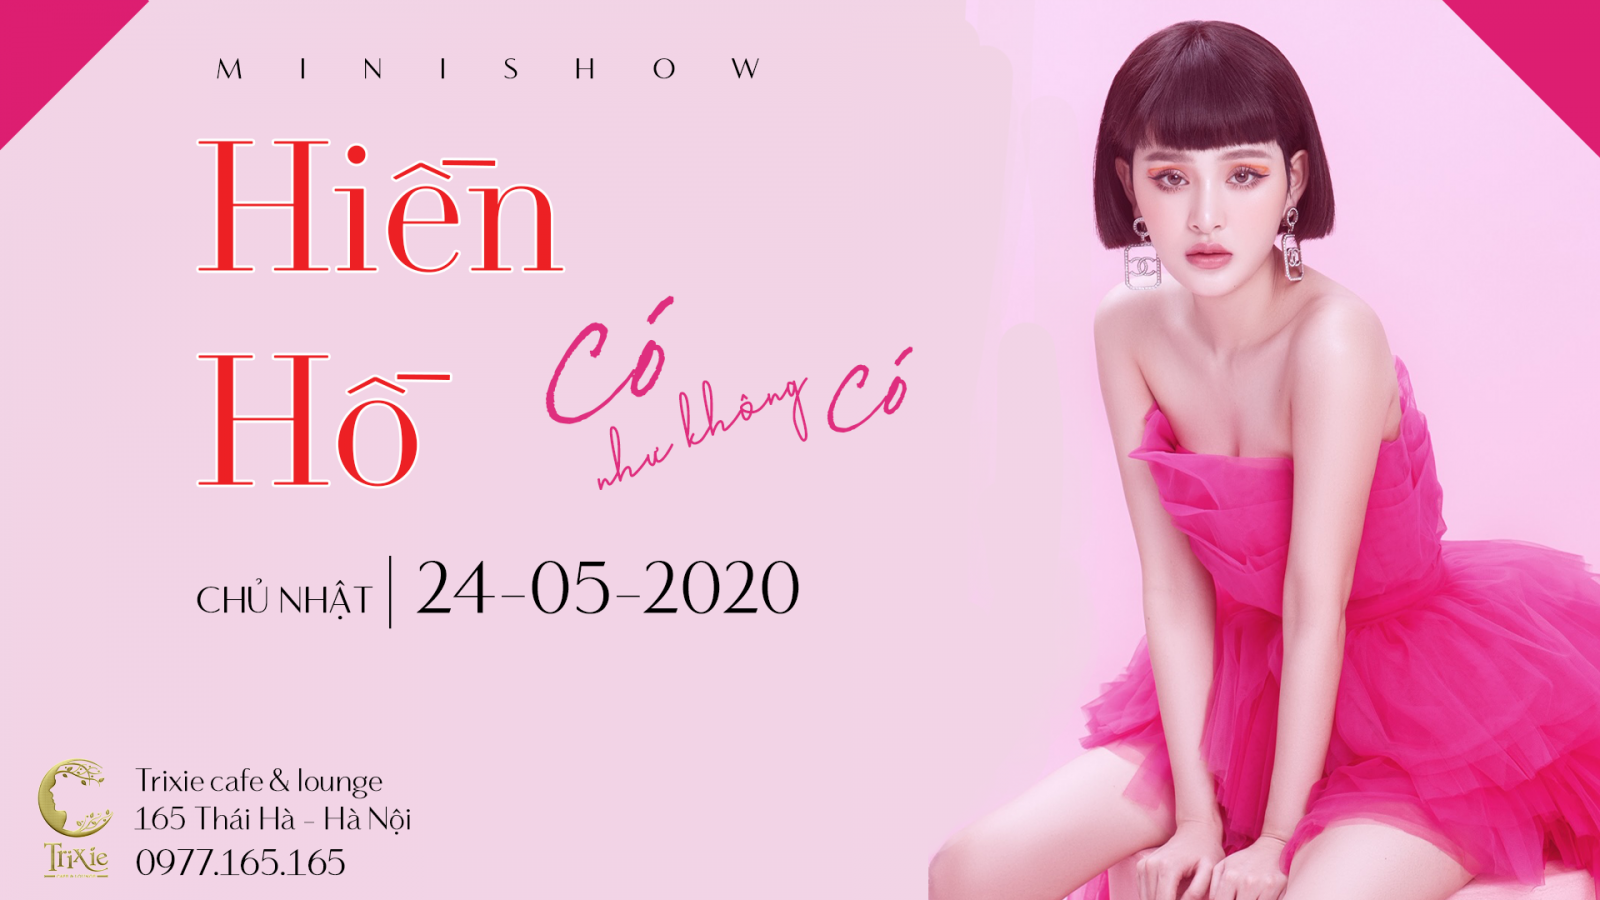 Minishow Hiền Hồ ngày 24.05.2020 tại Hà Nội